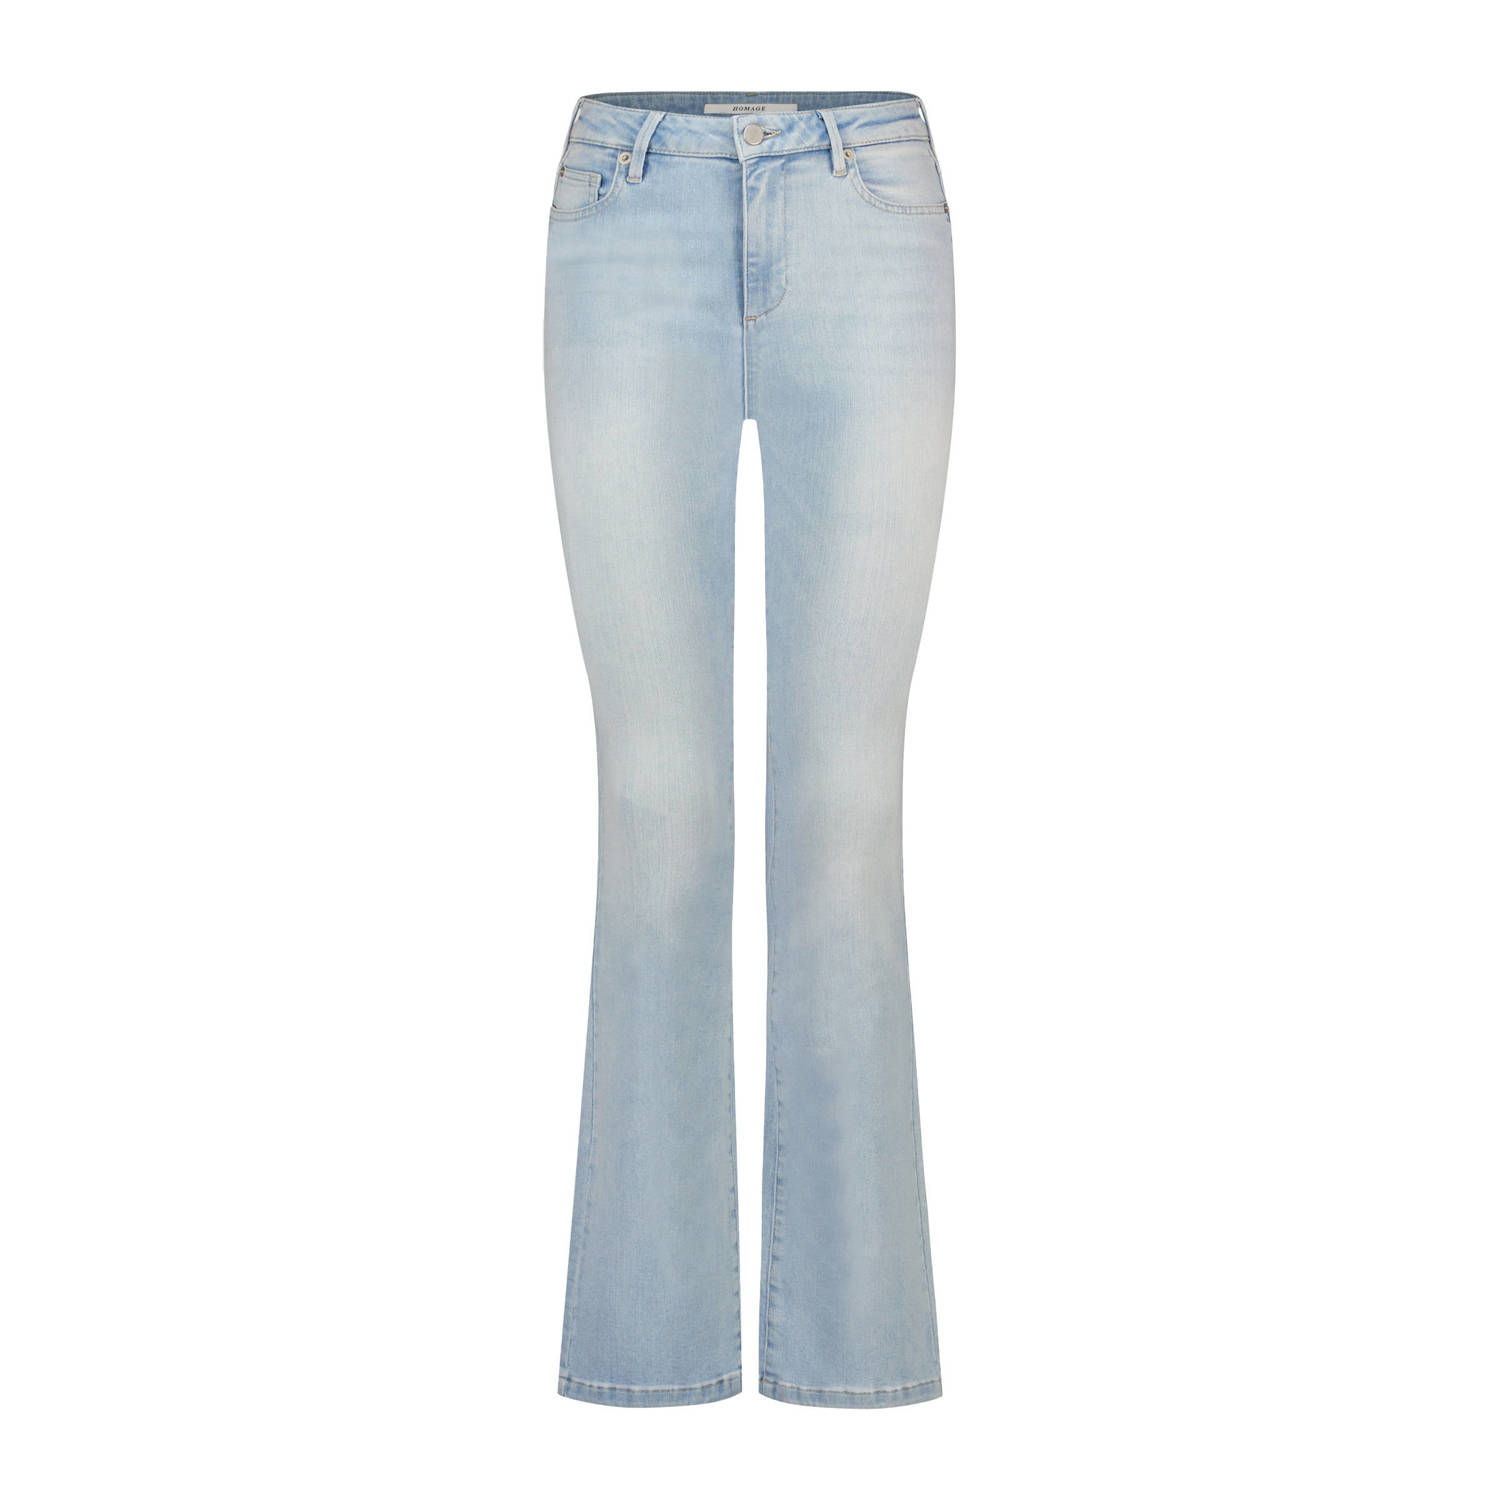 Homage to Denim flared jeans light blue denim